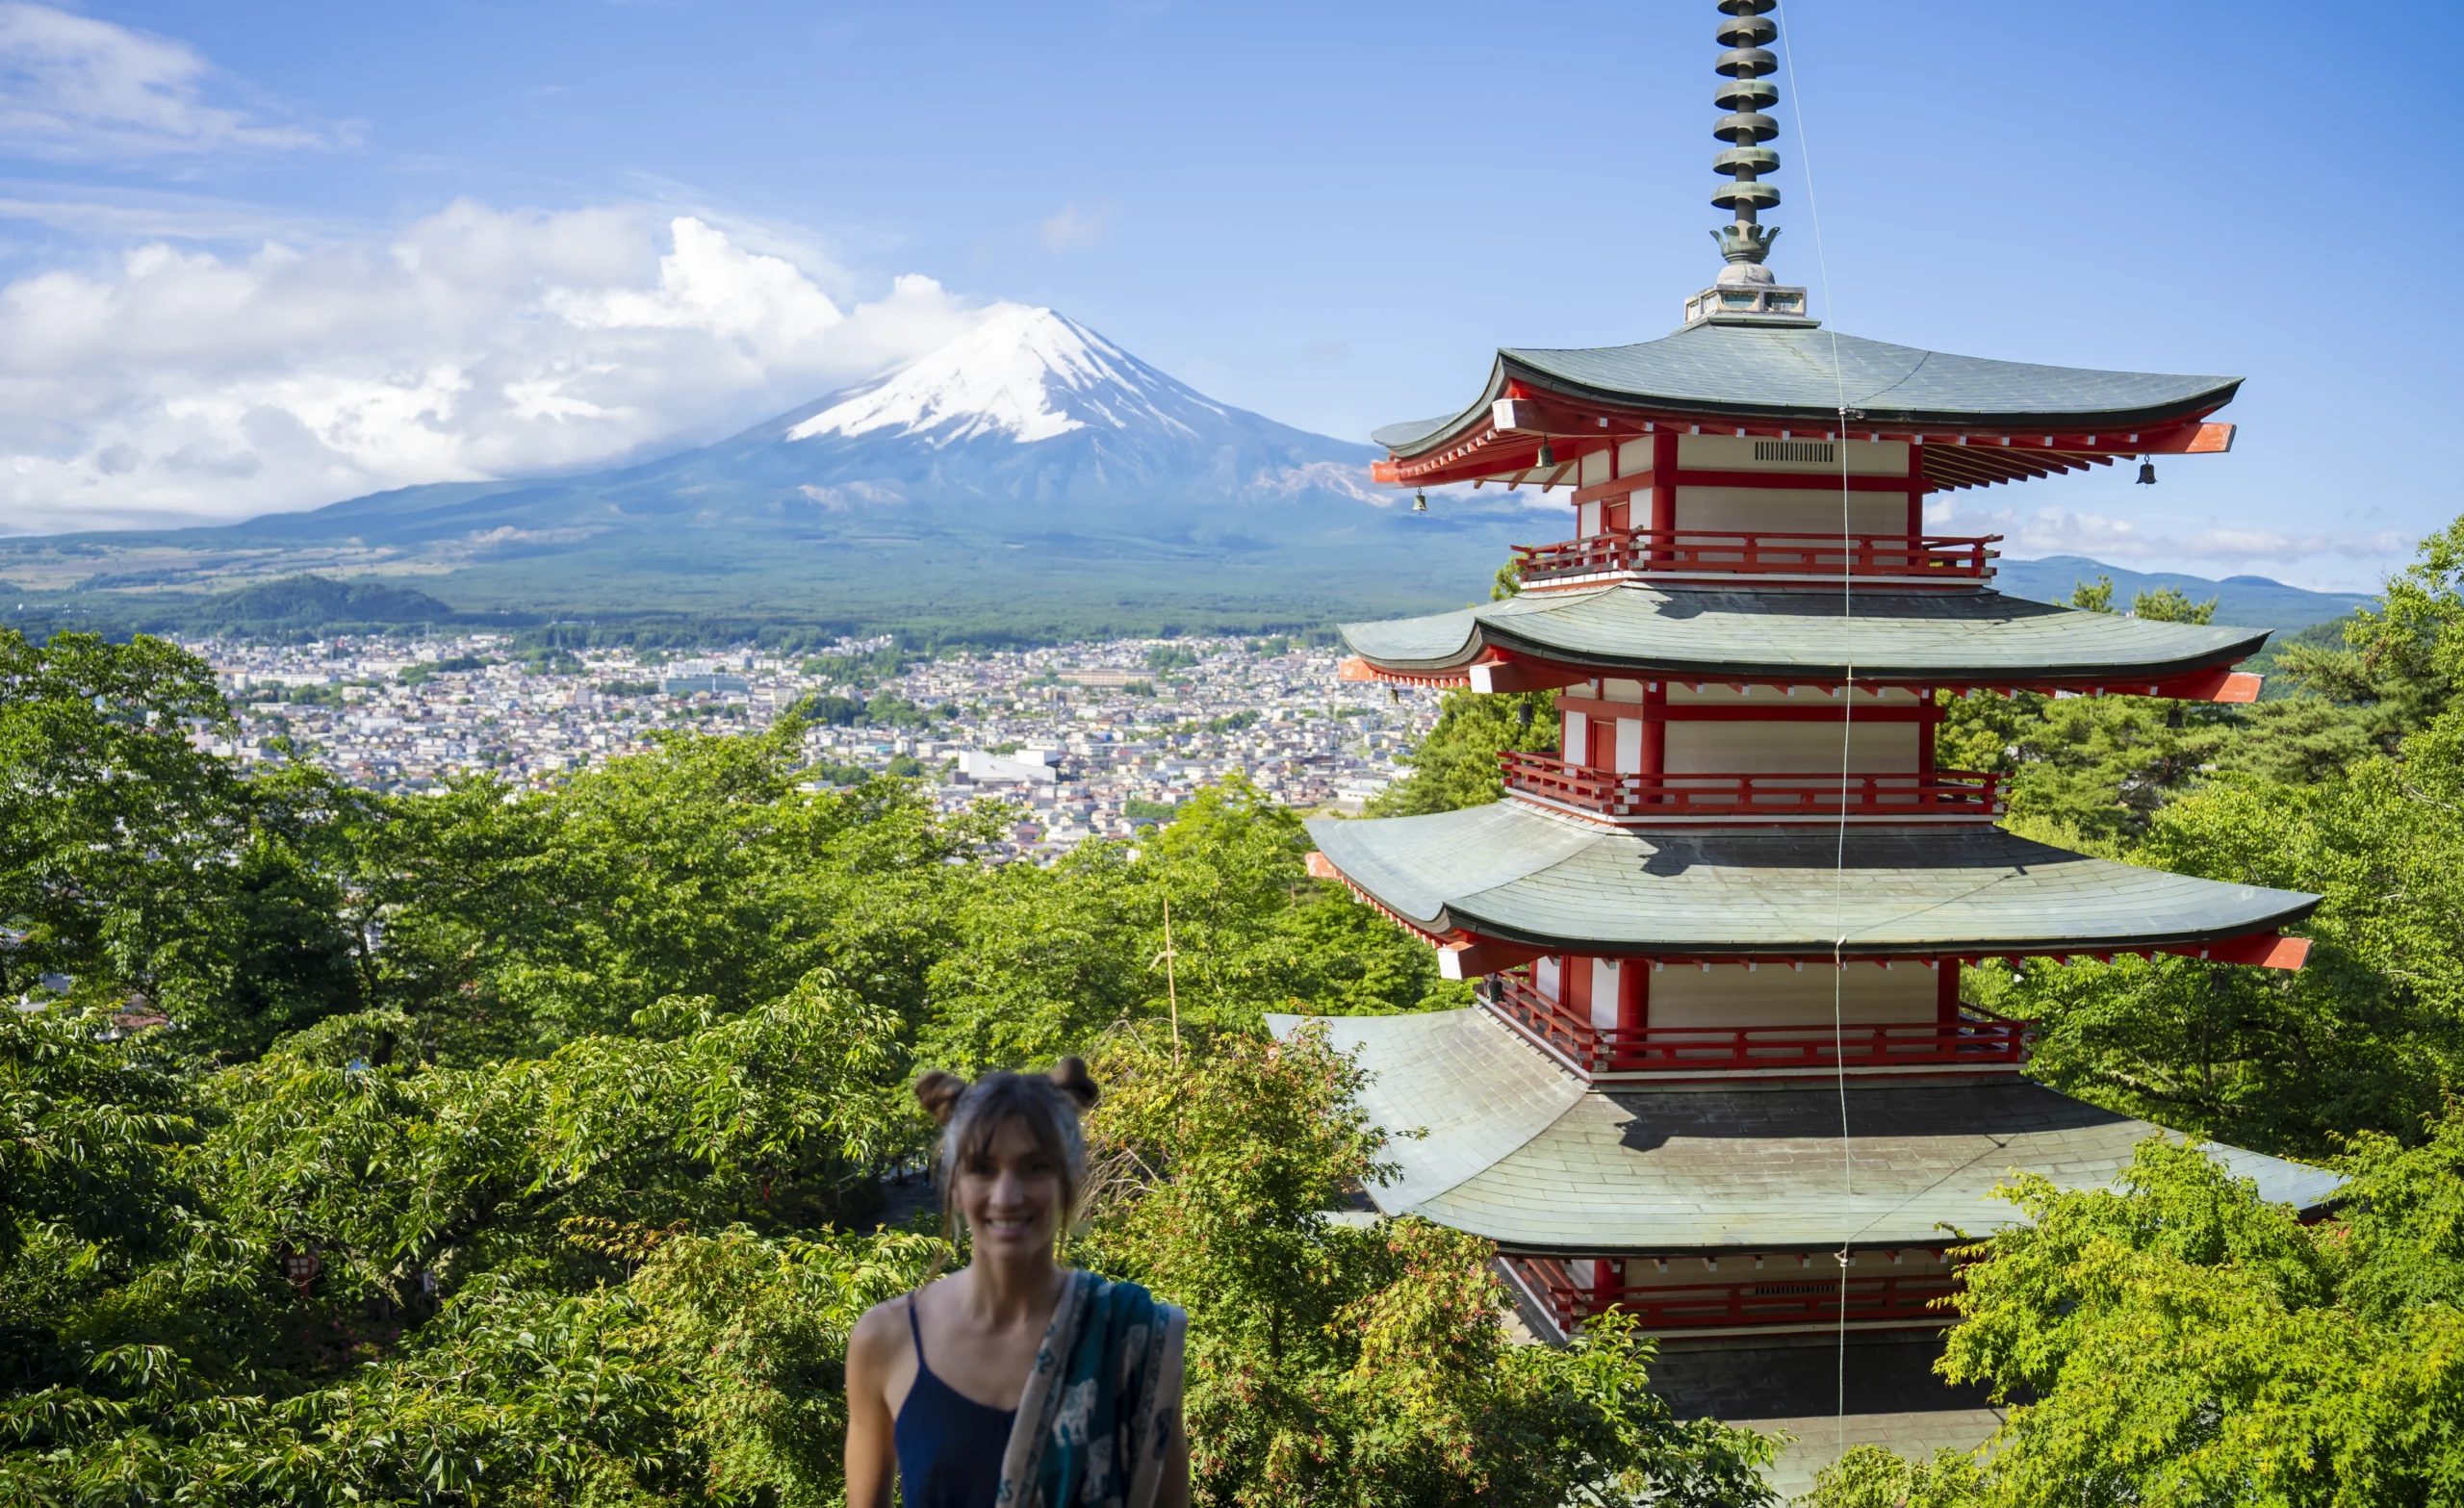 things to do around Mt. Fuji